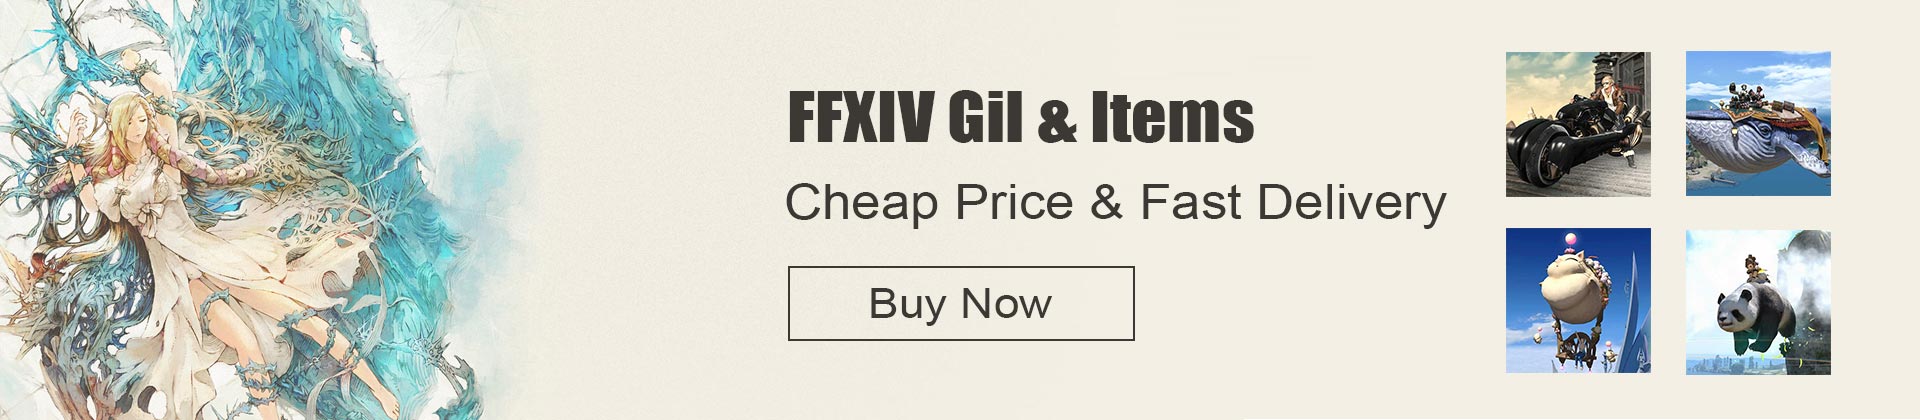 ffxiv gil & ffxiv items